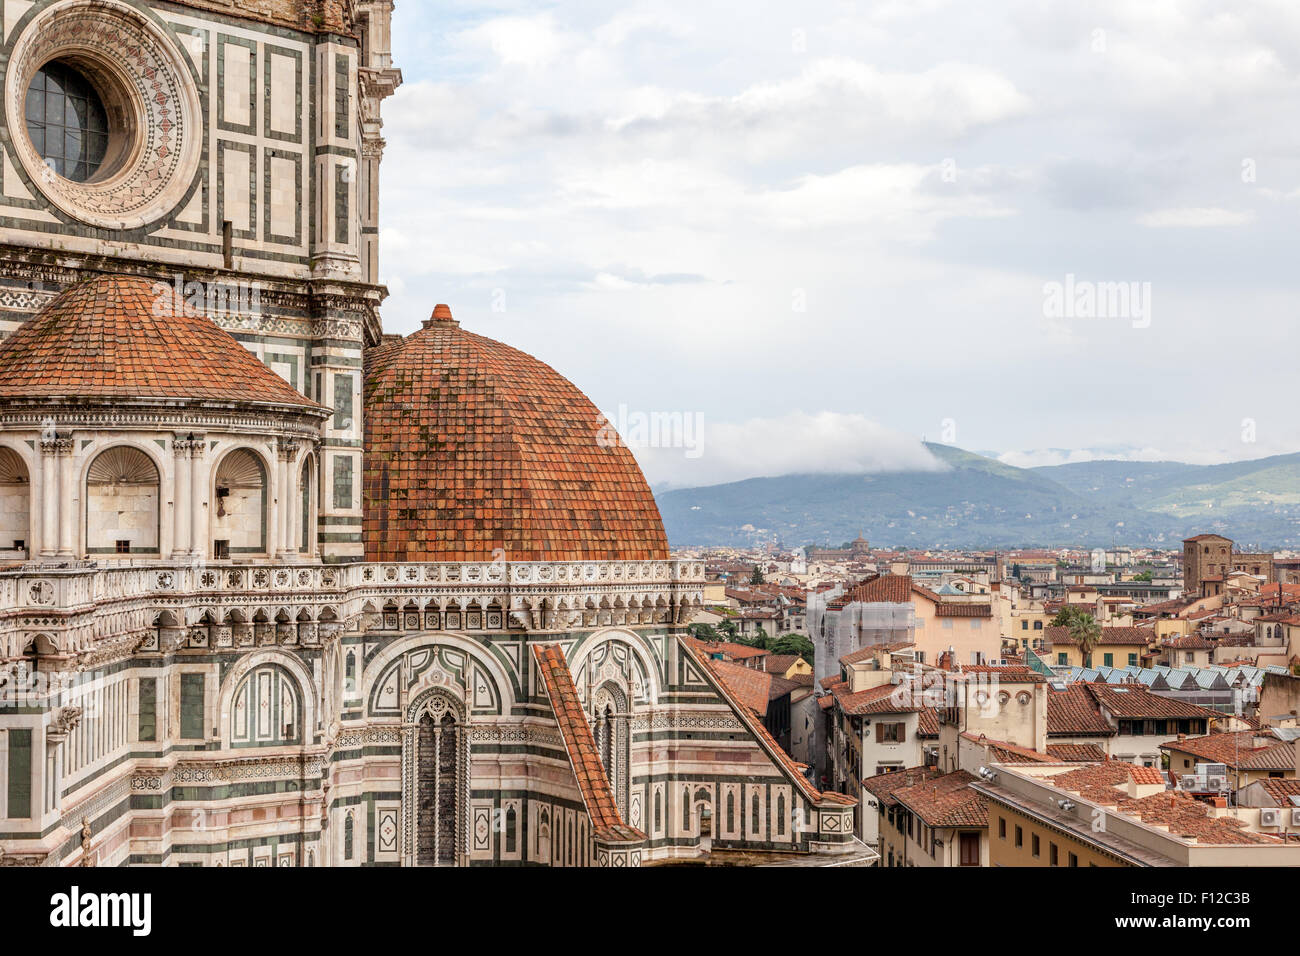 Cattedrale di Santa Maria del Fiore, Florence cathederal Piazza Duomo Stock Photo